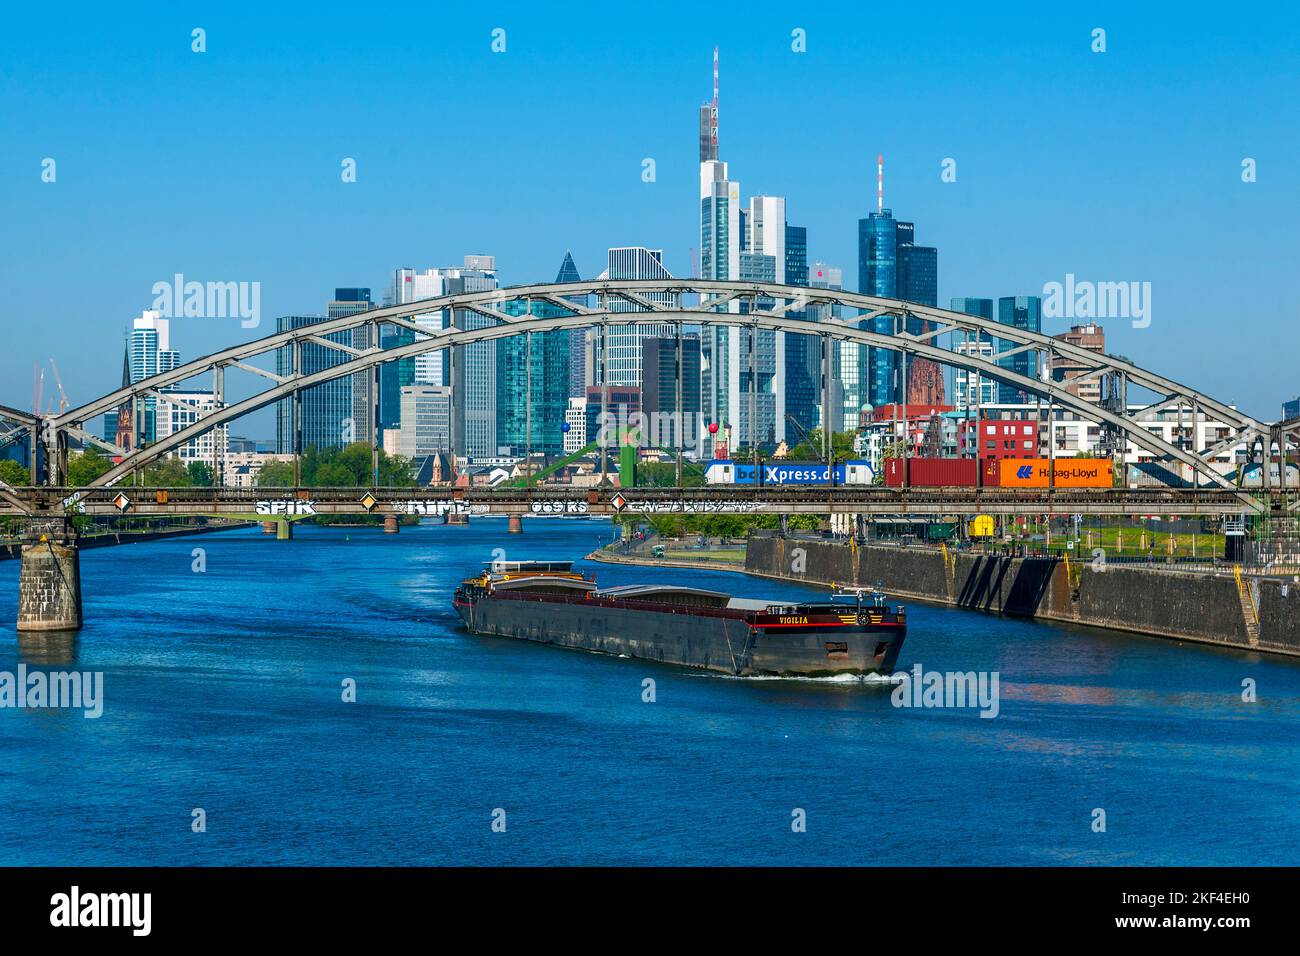 Die Skyline von Frankfurt am main im Sommer Banque D'Images